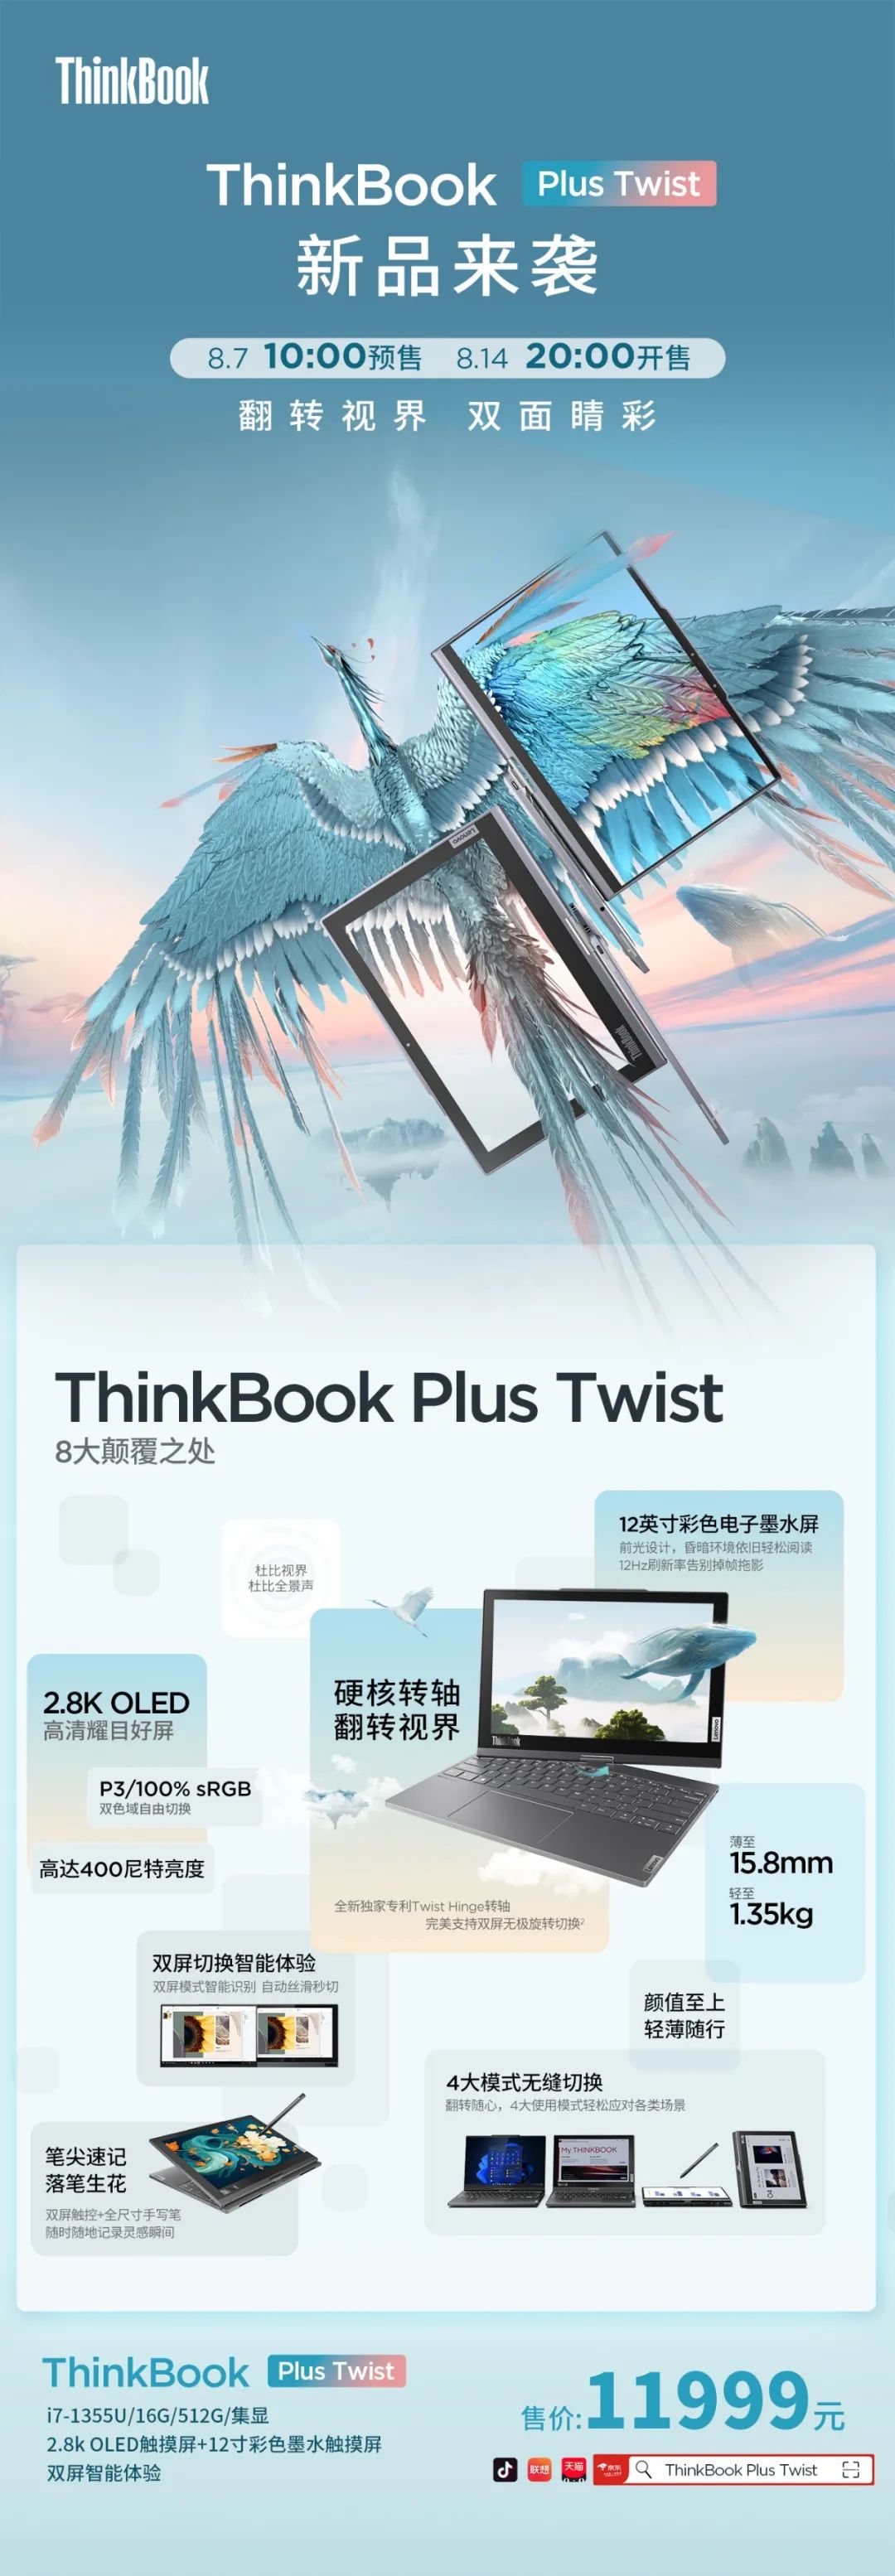 全球首款OLED+彩色墨水翻转双屏笔记本ThinkBook Plus Twist上市  第15张